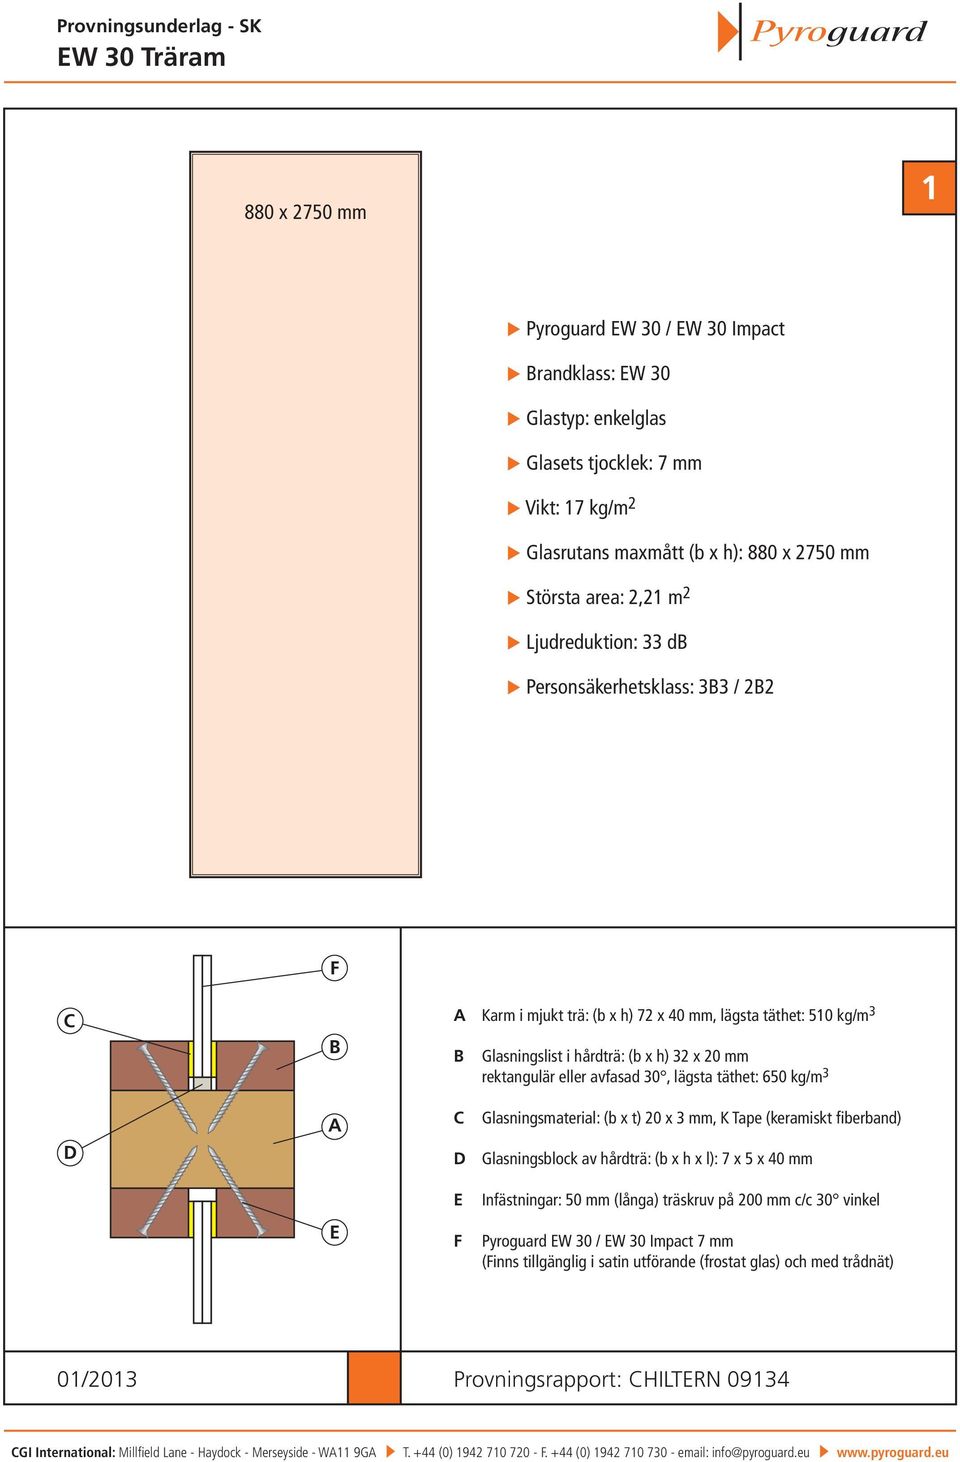 täthet: 650 kg/m 3 Glasningsmaterial: (b x t) 20 x 3 mm, K Tape (keramiskt fiberband) Glasningsblock av hårdträ: (b x h x l): 7 x 5 x 40 mm Infästningar: 50 mm (långa) träskruv på 200 mm c/c 30